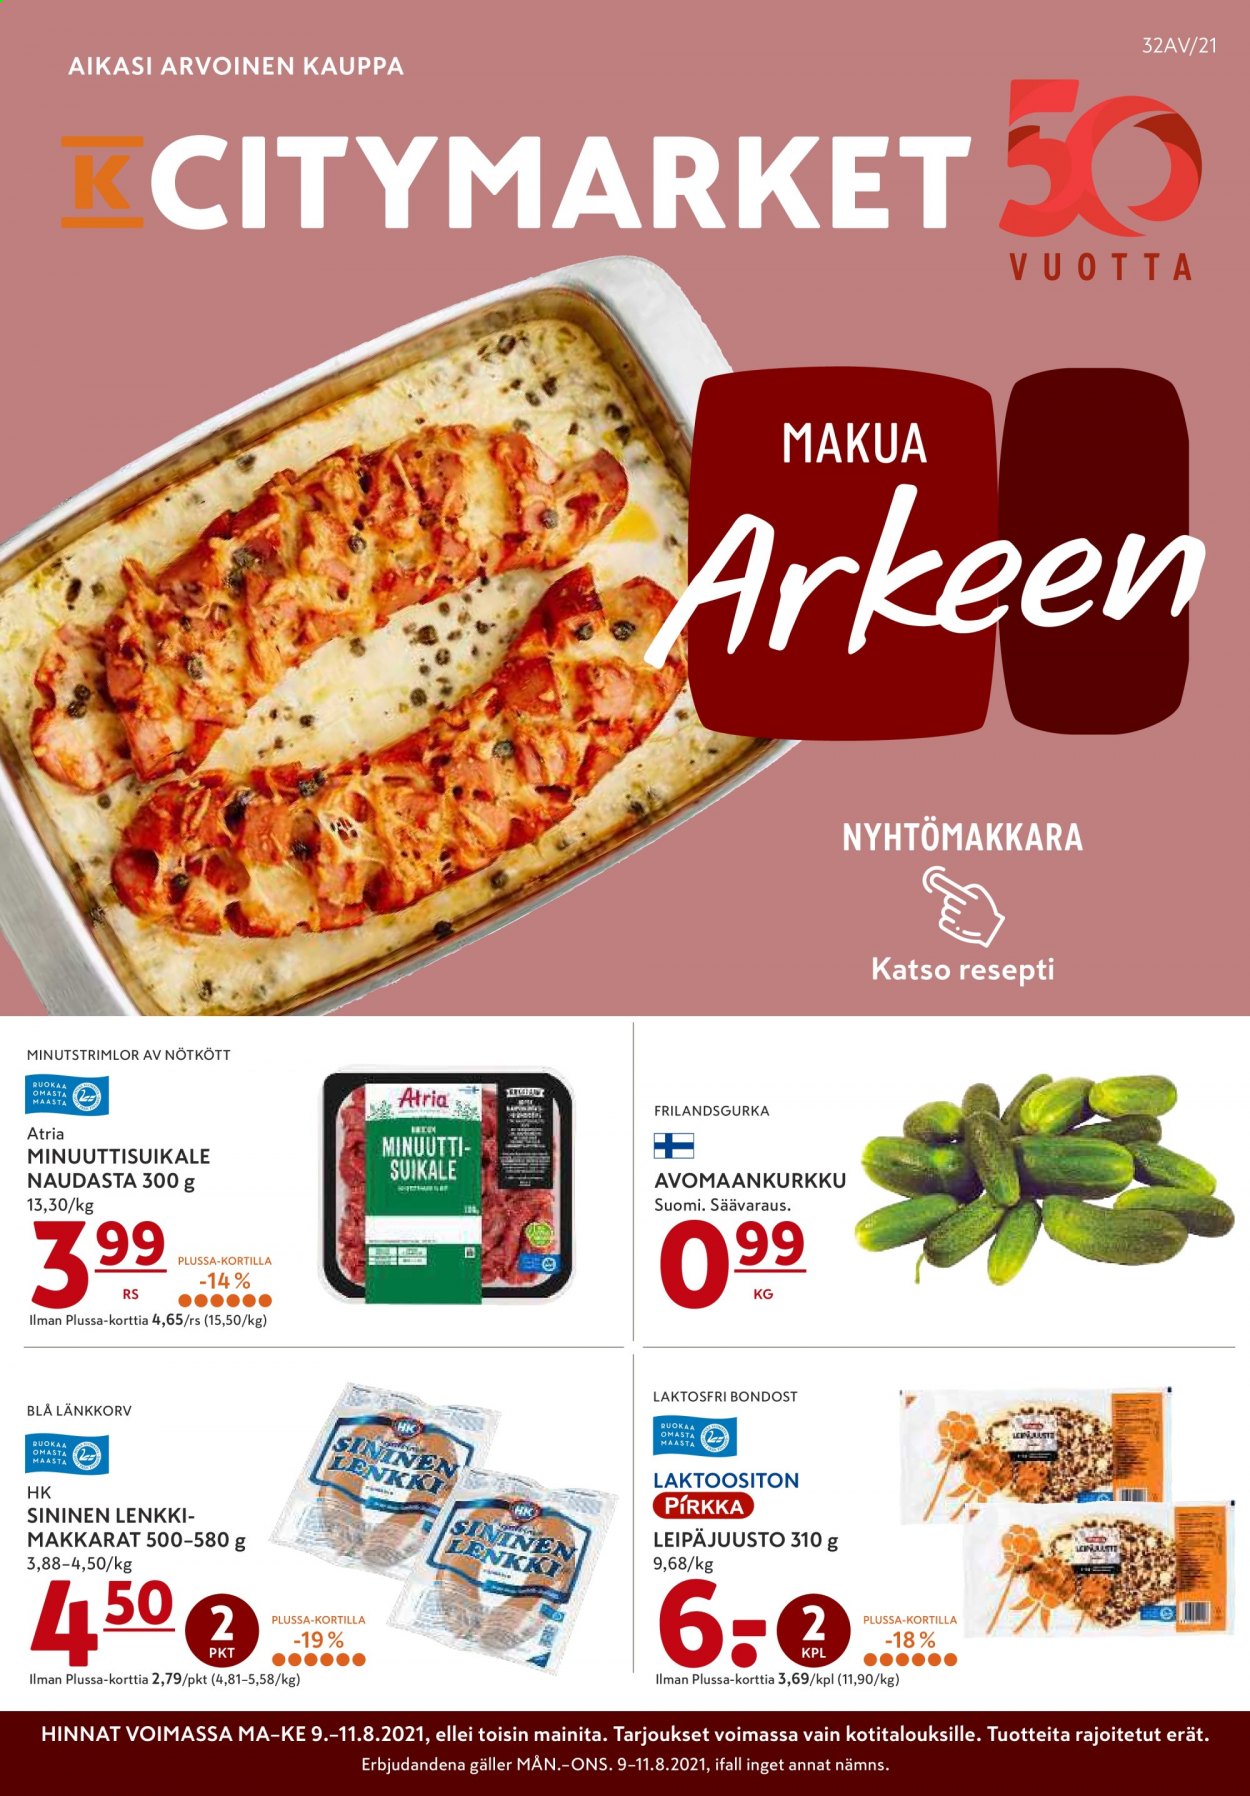 thumbnail - K-citymarket tarjoukset  - 09.08.2021 - 11.08.2021 - Tarjoustuotteet - Atria, leipäjuusto. Sivu 1.